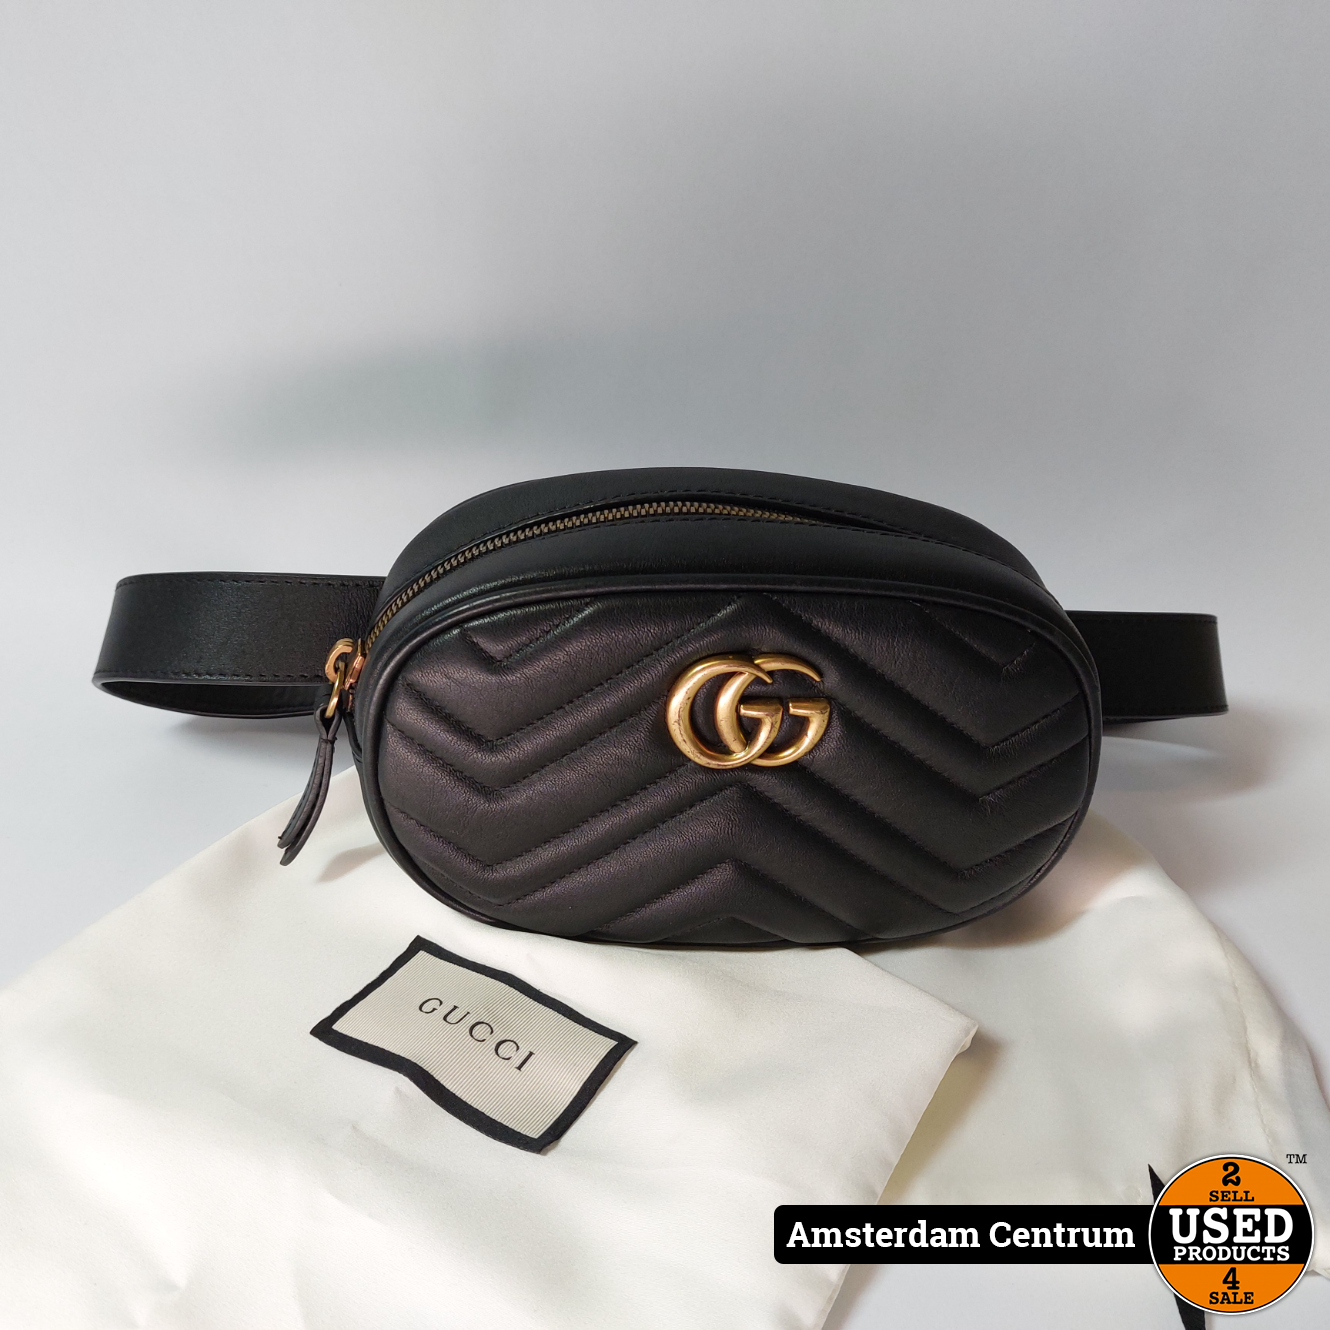 plan Legende slank Gucci Calfskin Matelasse GG Marmont Belt Bag 85 34 Black - Used Products  Amsterdam Centrum